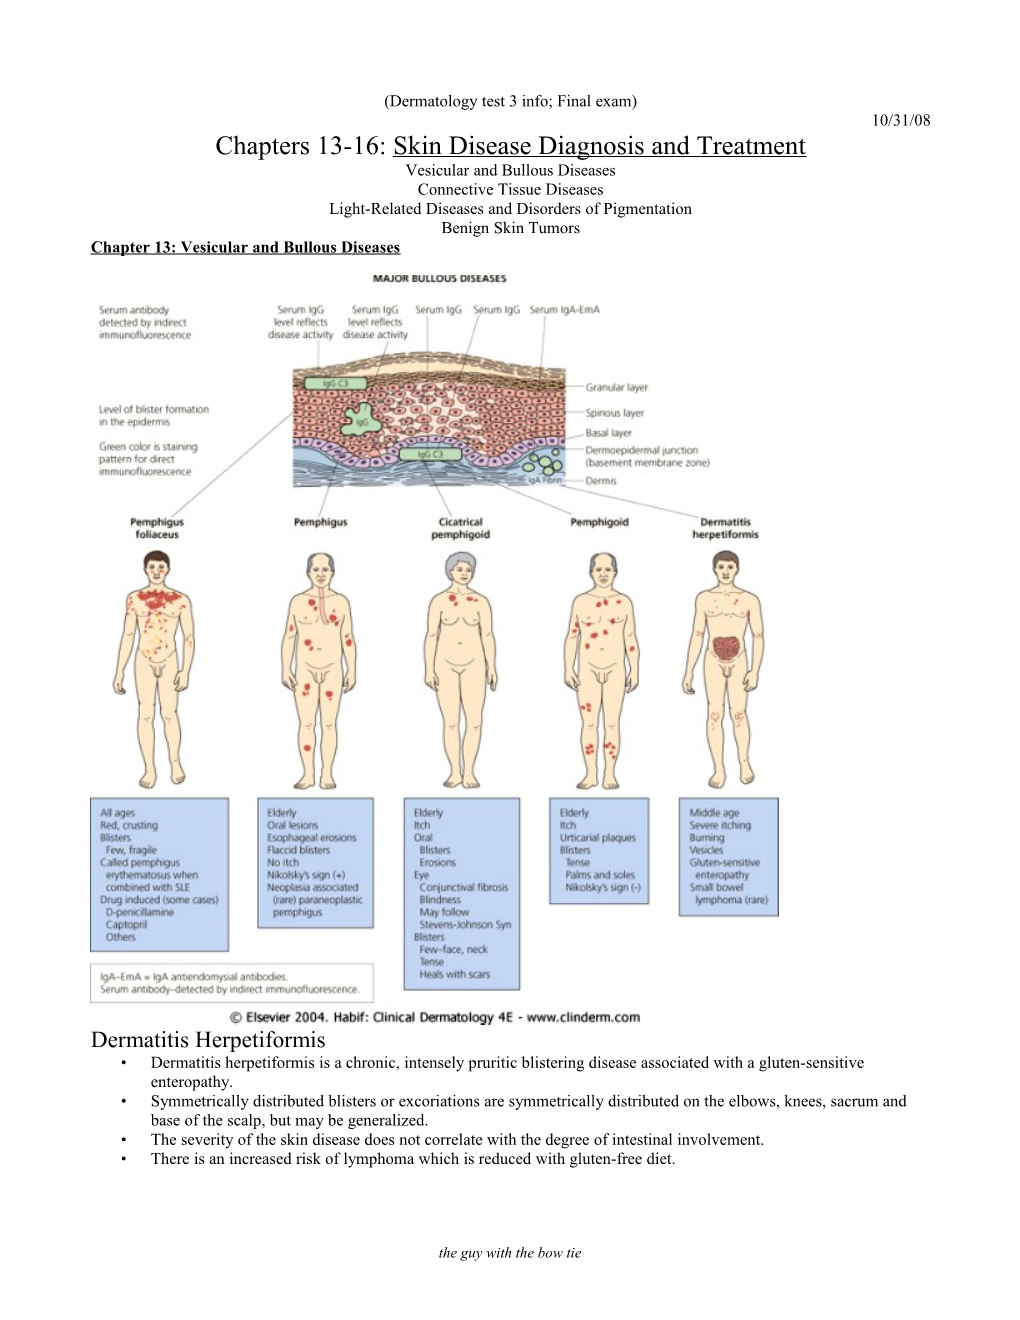 Dermatology Test 3 Info; Final Exam